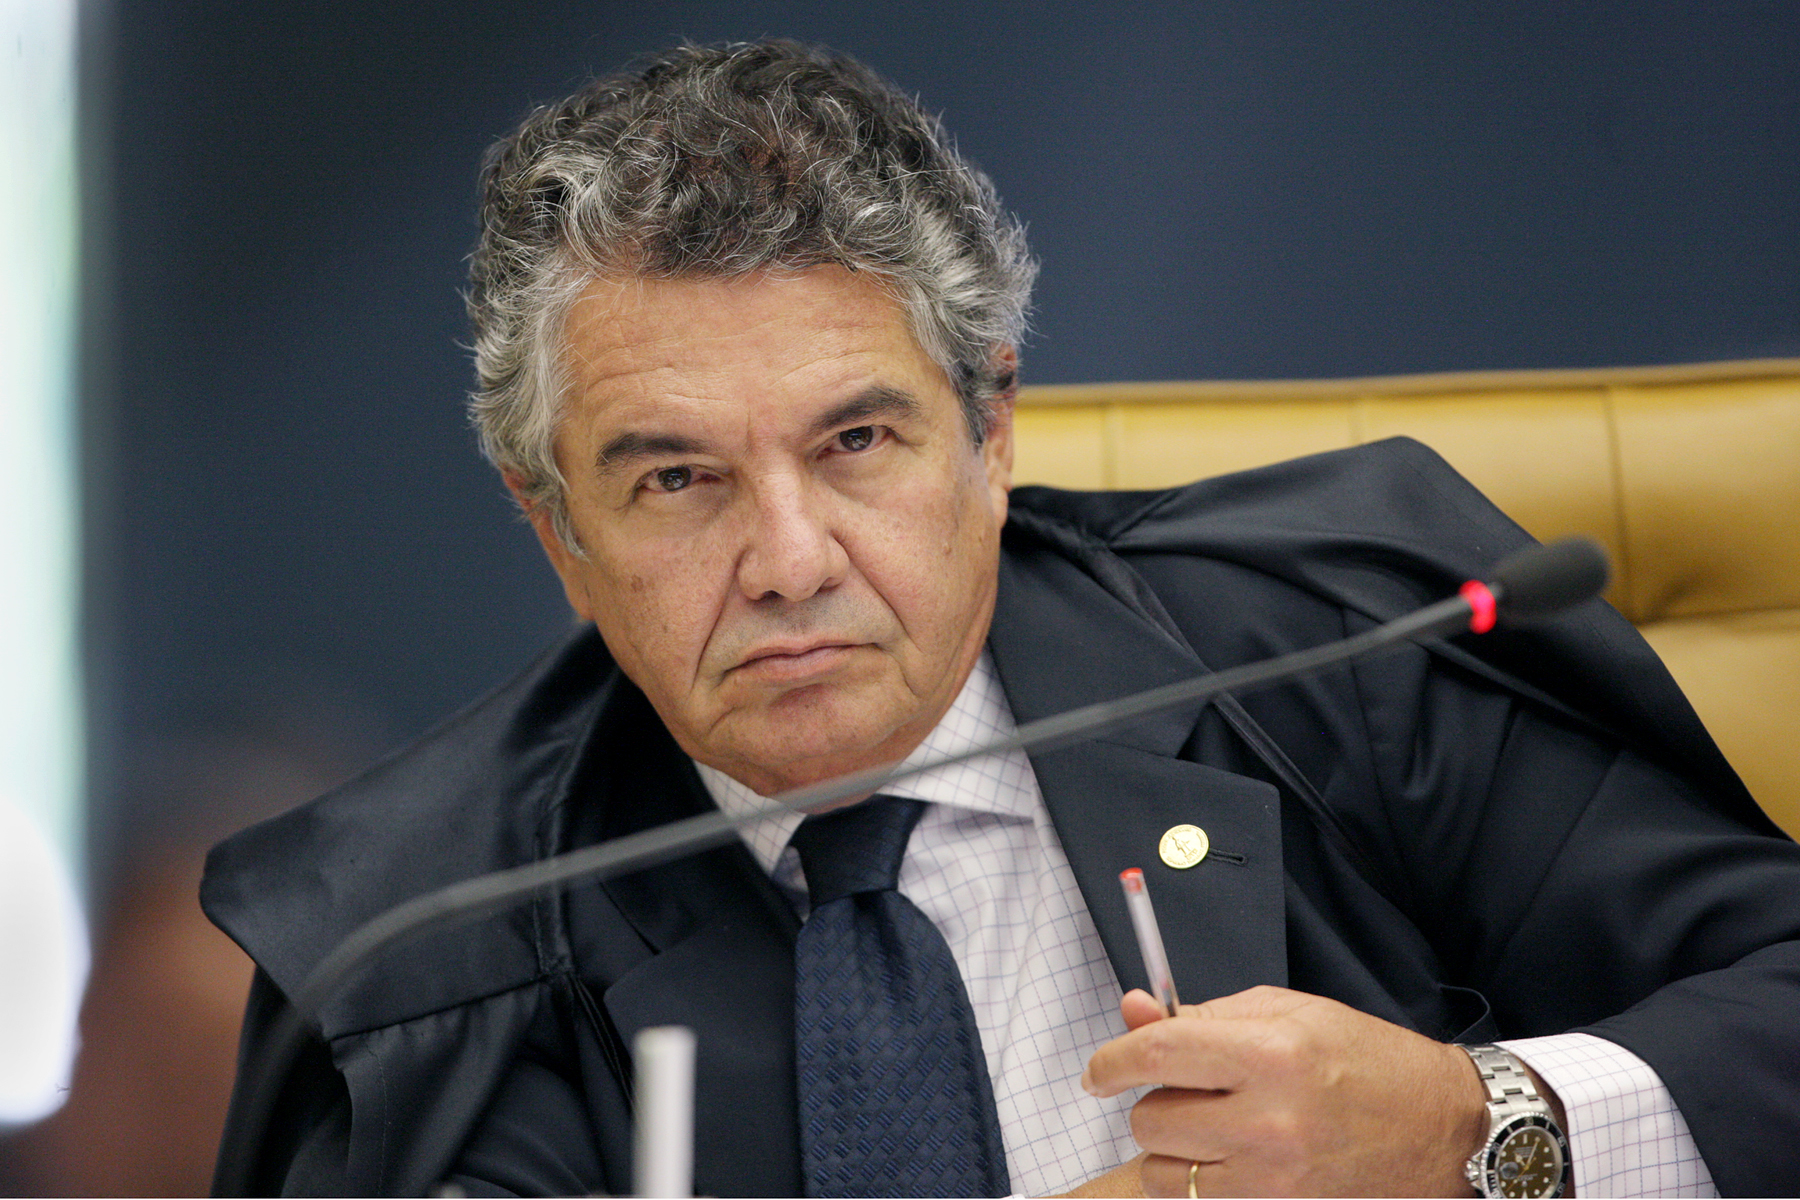 A decisão liminar (provisória) do ministro para liberar presos condenados a 2ª instância atendeu a pedido do PCdoB e atinge, inclusive, o ex-presidente Lula